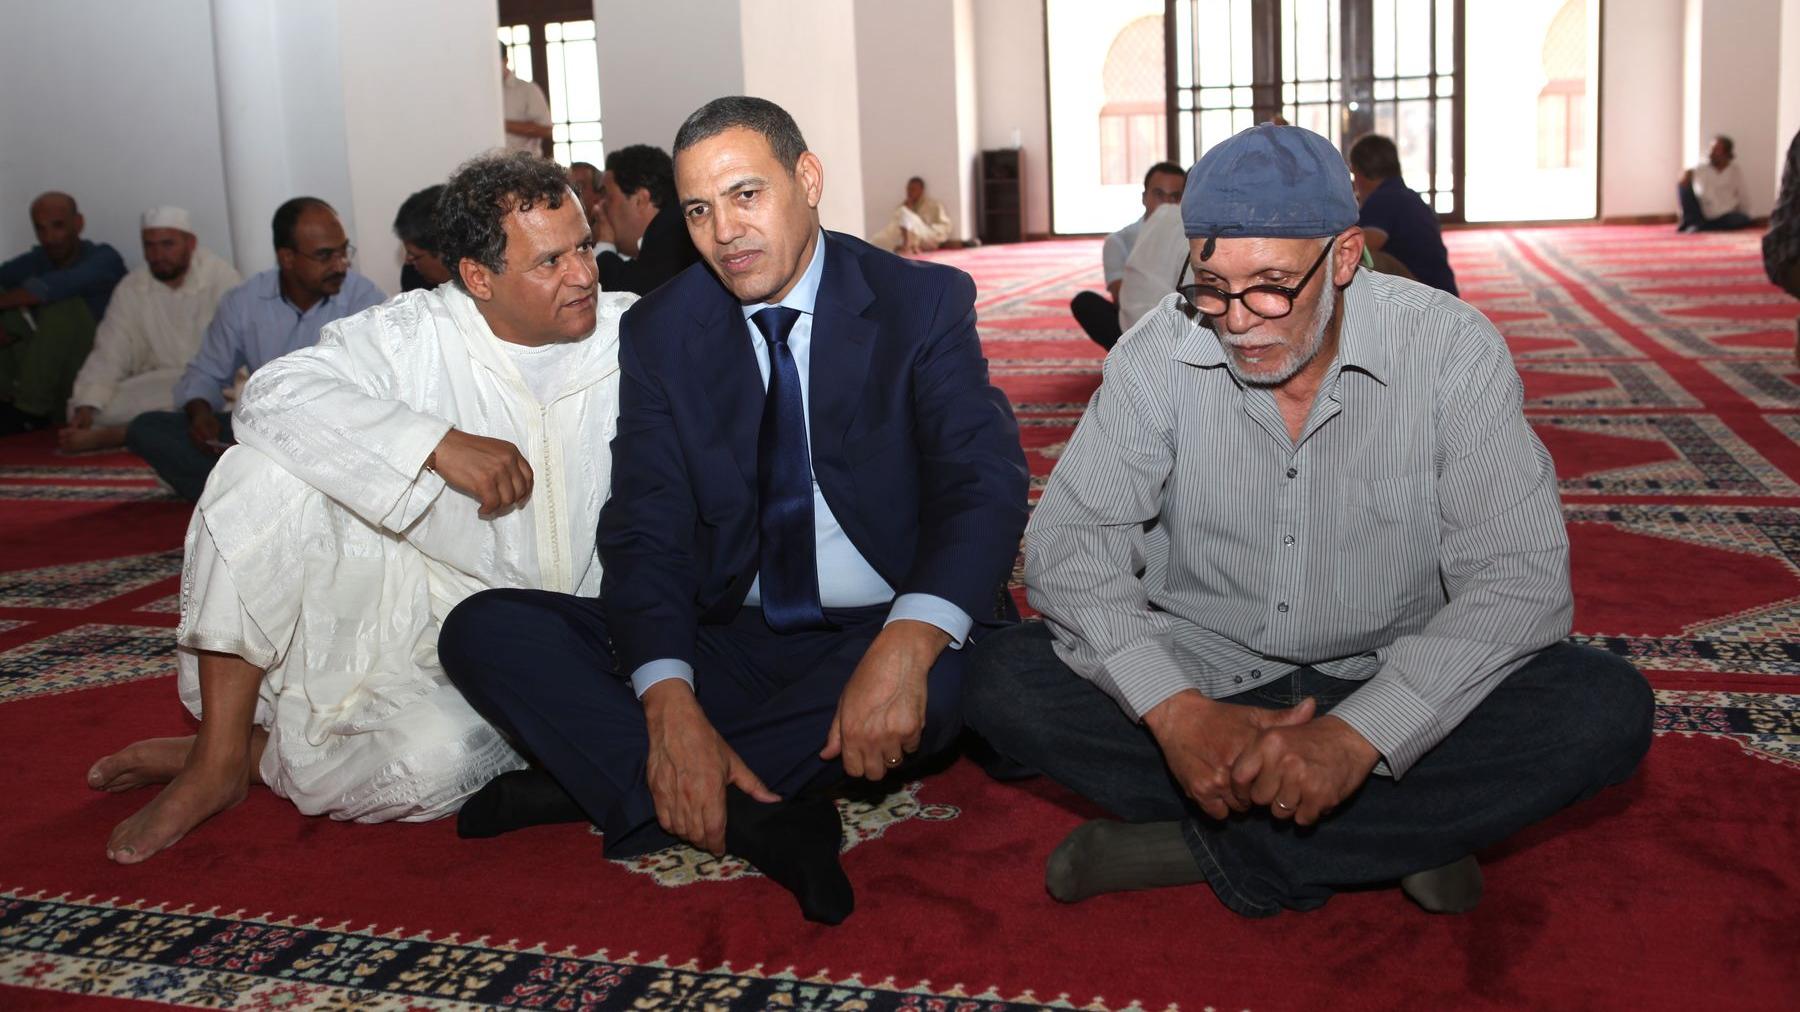 الوالي عبد السلام بيكرات في حديث إلى الفنانين عبد الكبير ربيعي والمهدي قطبي (مدير متاحف المغرب)
